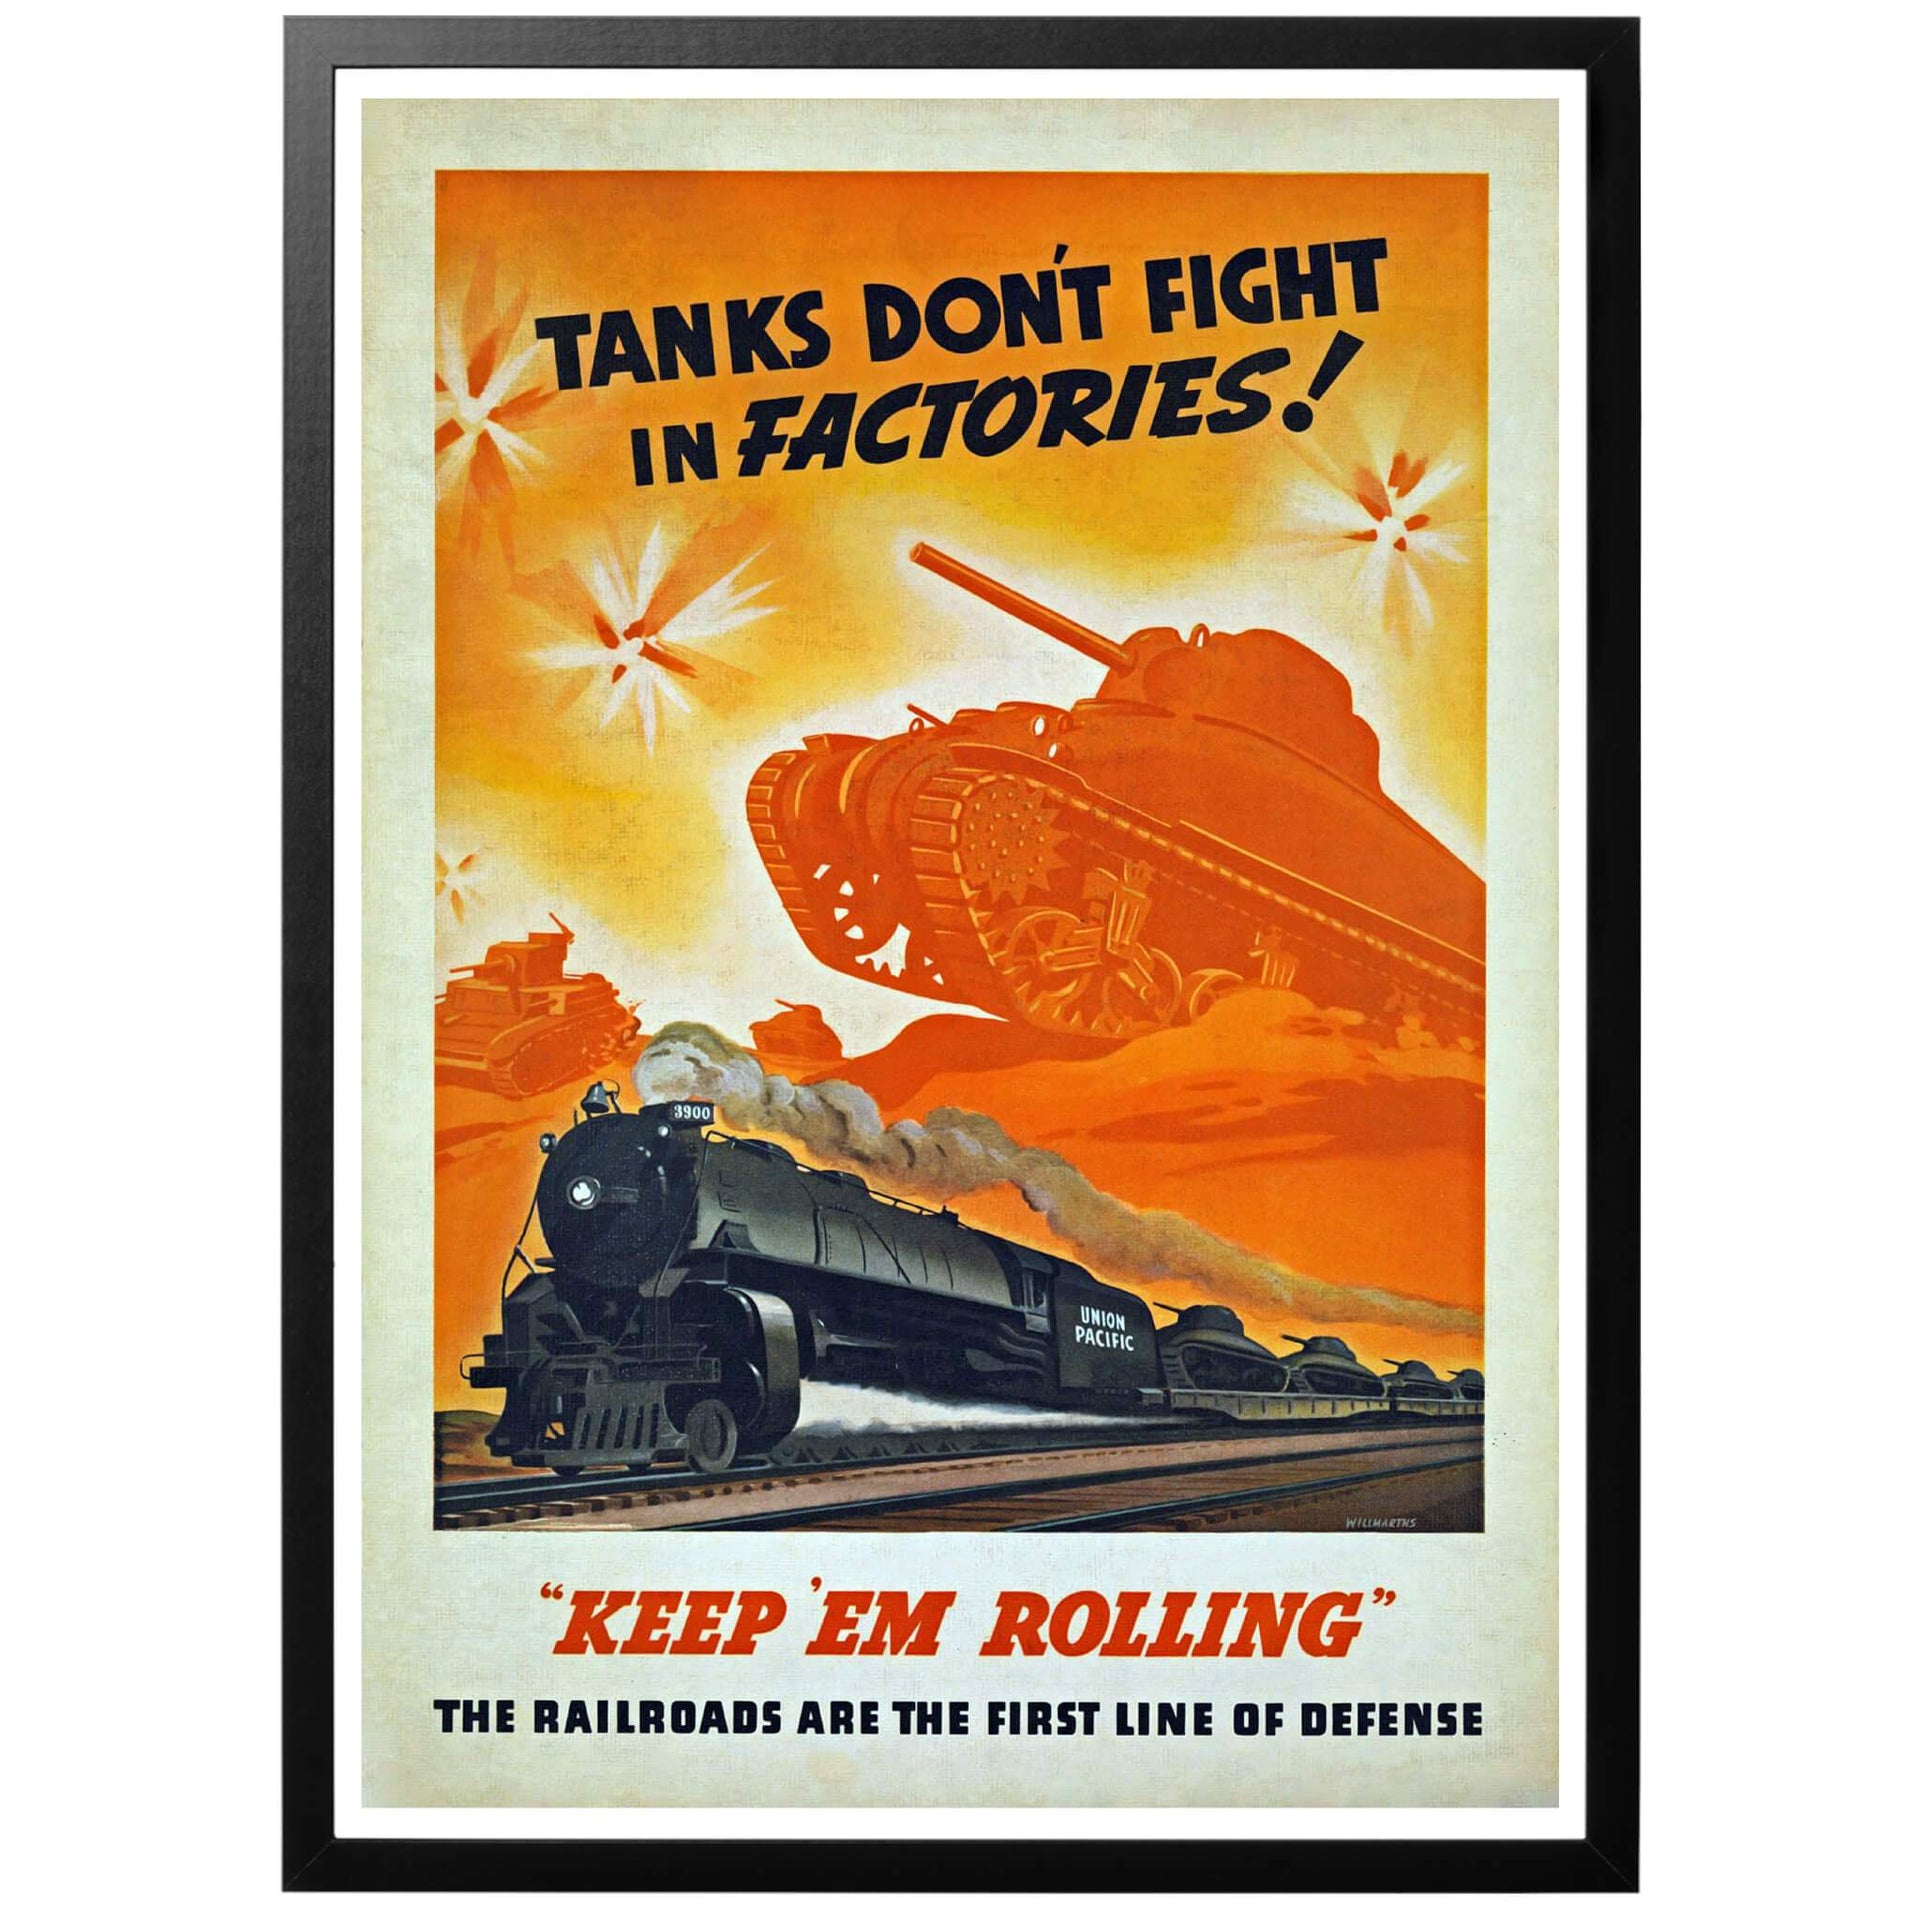 Tanks dont fight in factories! Keep em rolling - Stridsvagnar kämpar inte i fabriker - håll dem rullande Amerikansk WWII affisch. En fartfylld poster vars budskap är att krigsmateriel inte gör någon nytta om den inte kan transporterats till fronten! Stridsvagnar strider inte i fabriker! Håll tågen rullande!